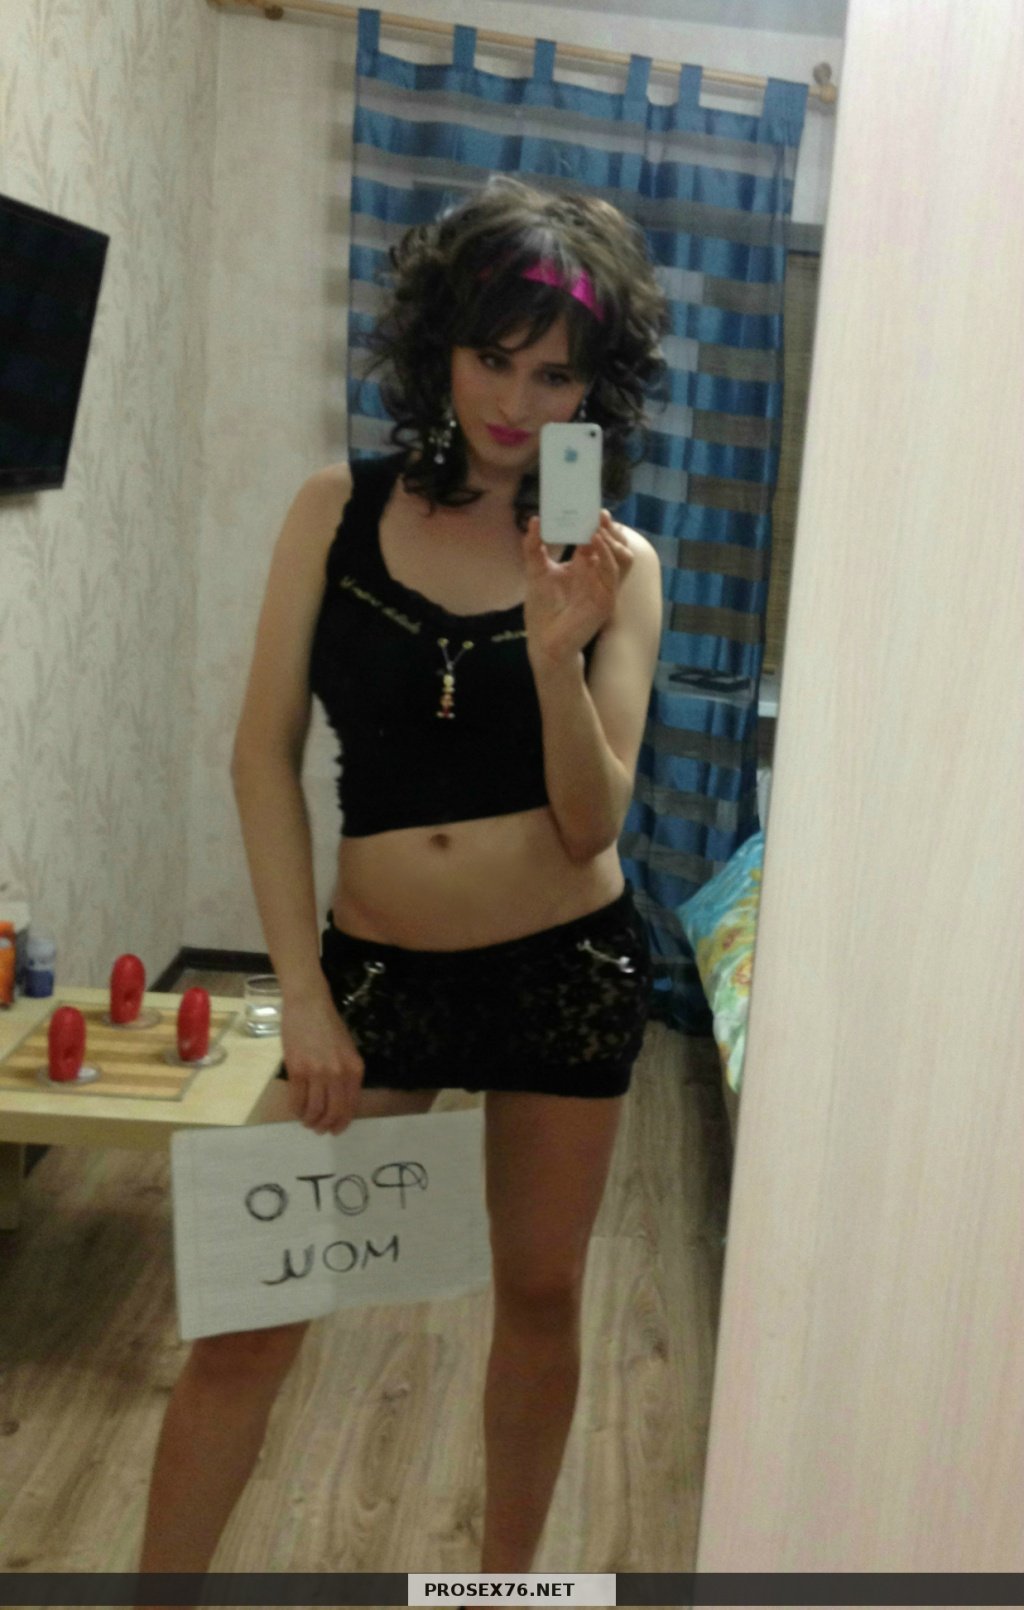  Транссексуалка: проститутки индивидуалки в Ярославле